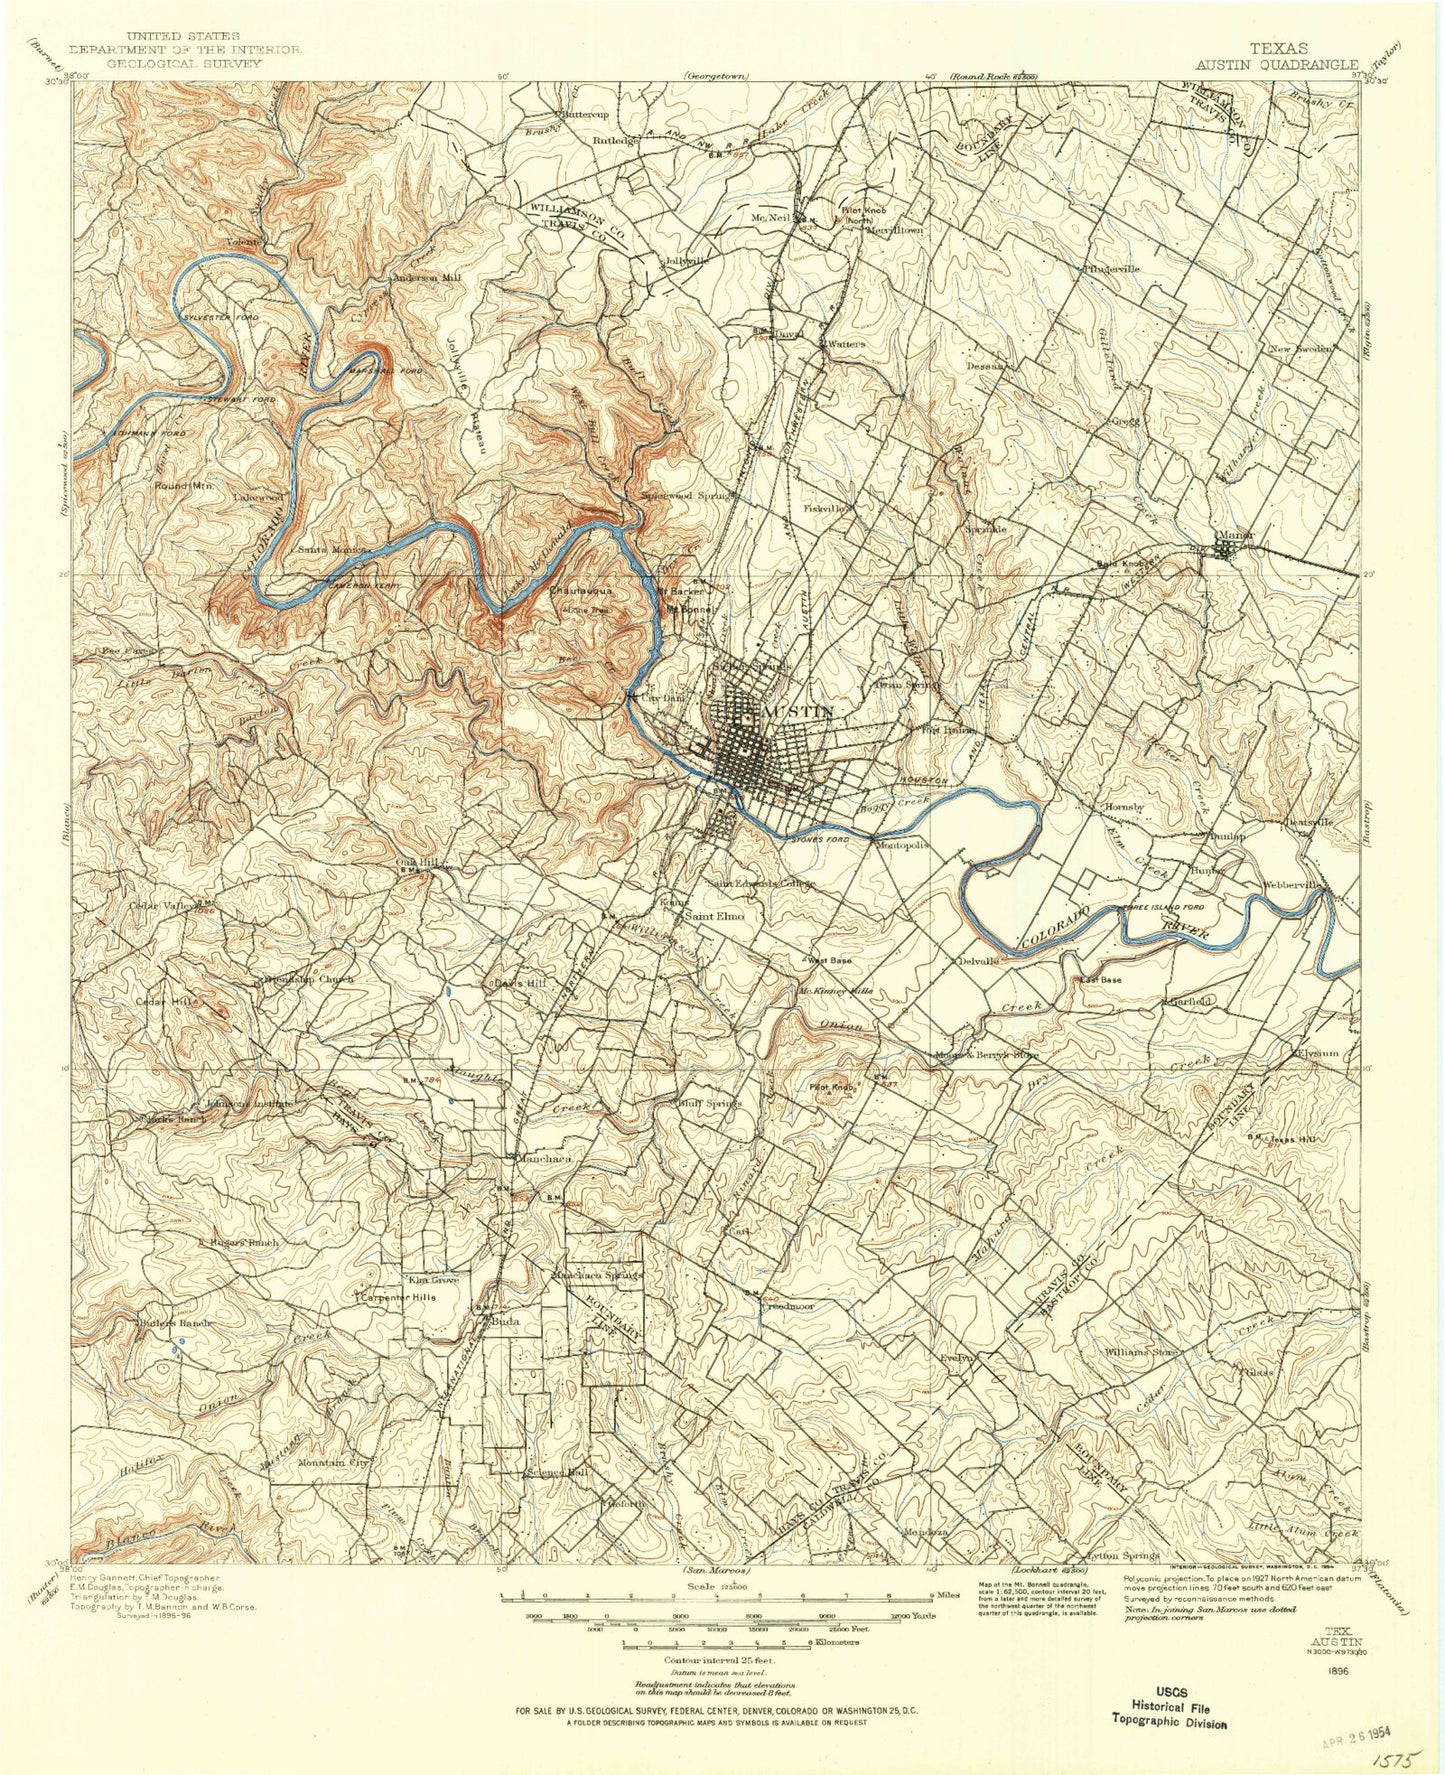 Historic 1896 Austin Texas 30'x30' Topo Map Image